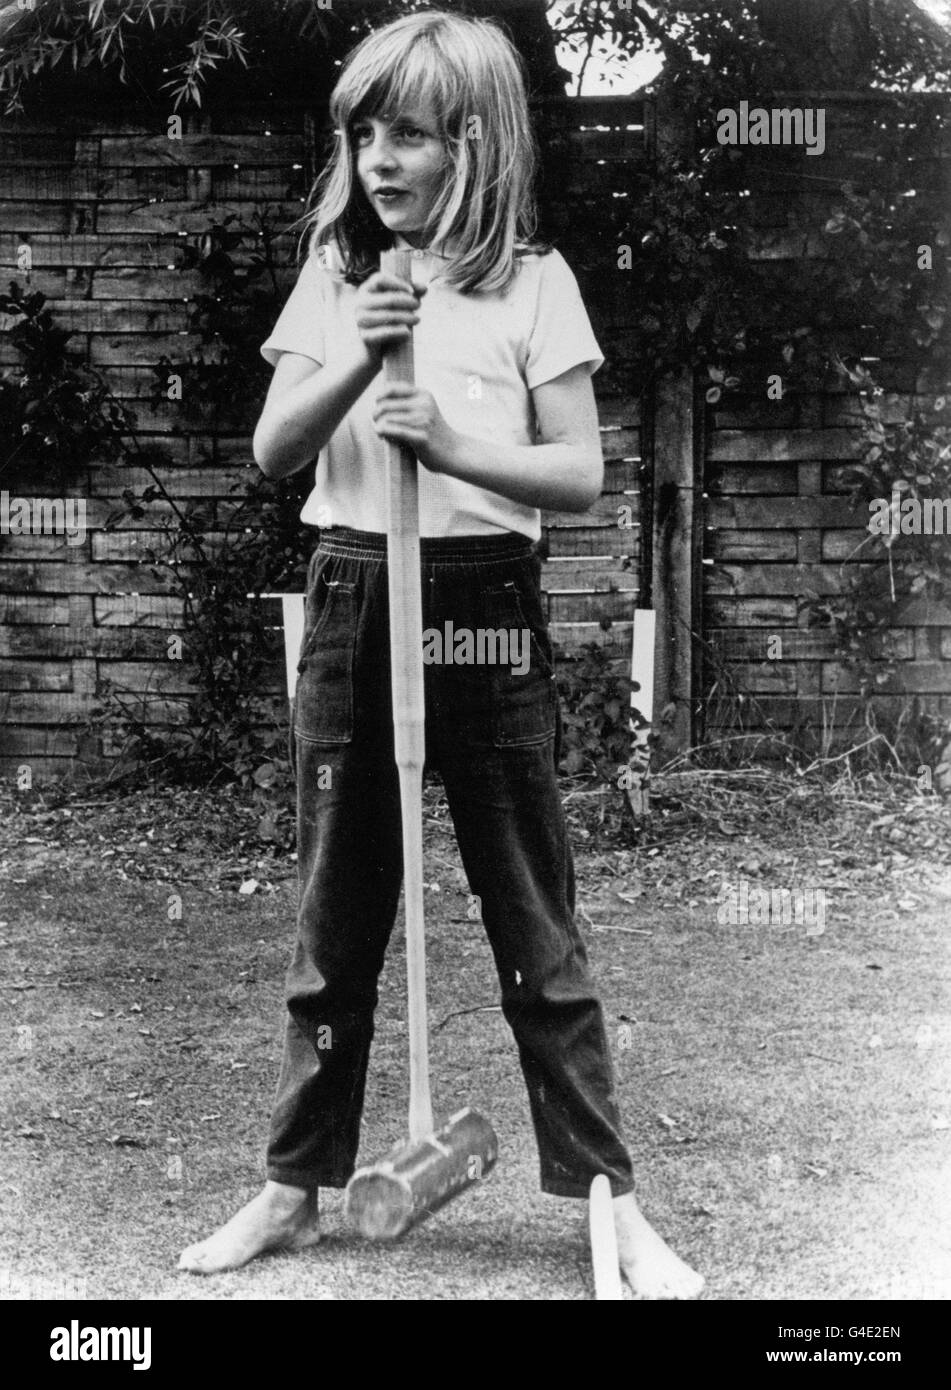 Lady Diana Spencer posiert barfuß mit einem Krocketschläger, während sie 1970 im Urlaub in Itschenor Sussex ist. Stockfoto